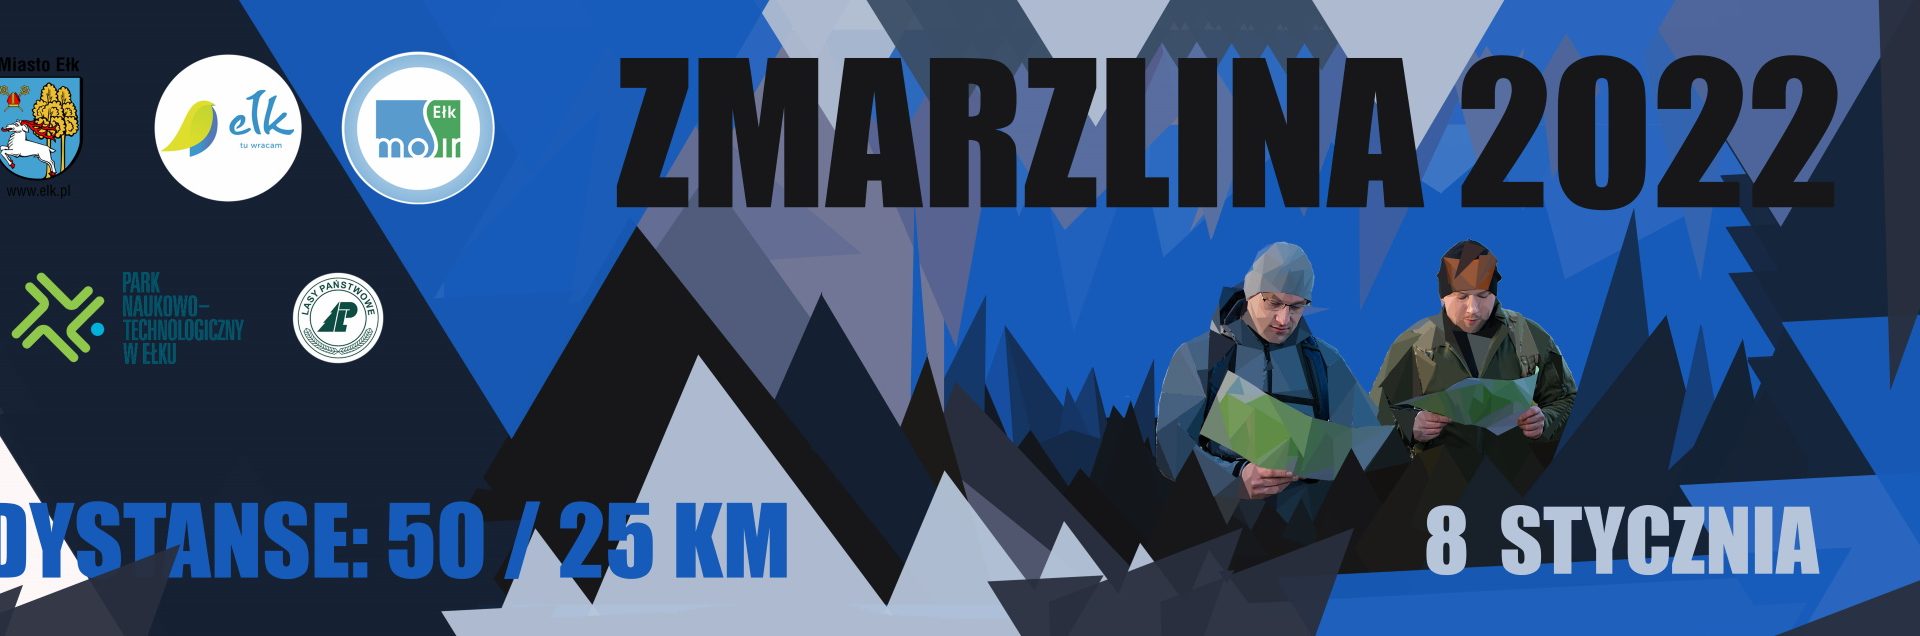 Plakat graficzny zapraszający do Ełku na cykliczną sportową imprezę cieszącą się dużym zainteresowaniem Ełcka Zmarzlina - Ełk 2022.